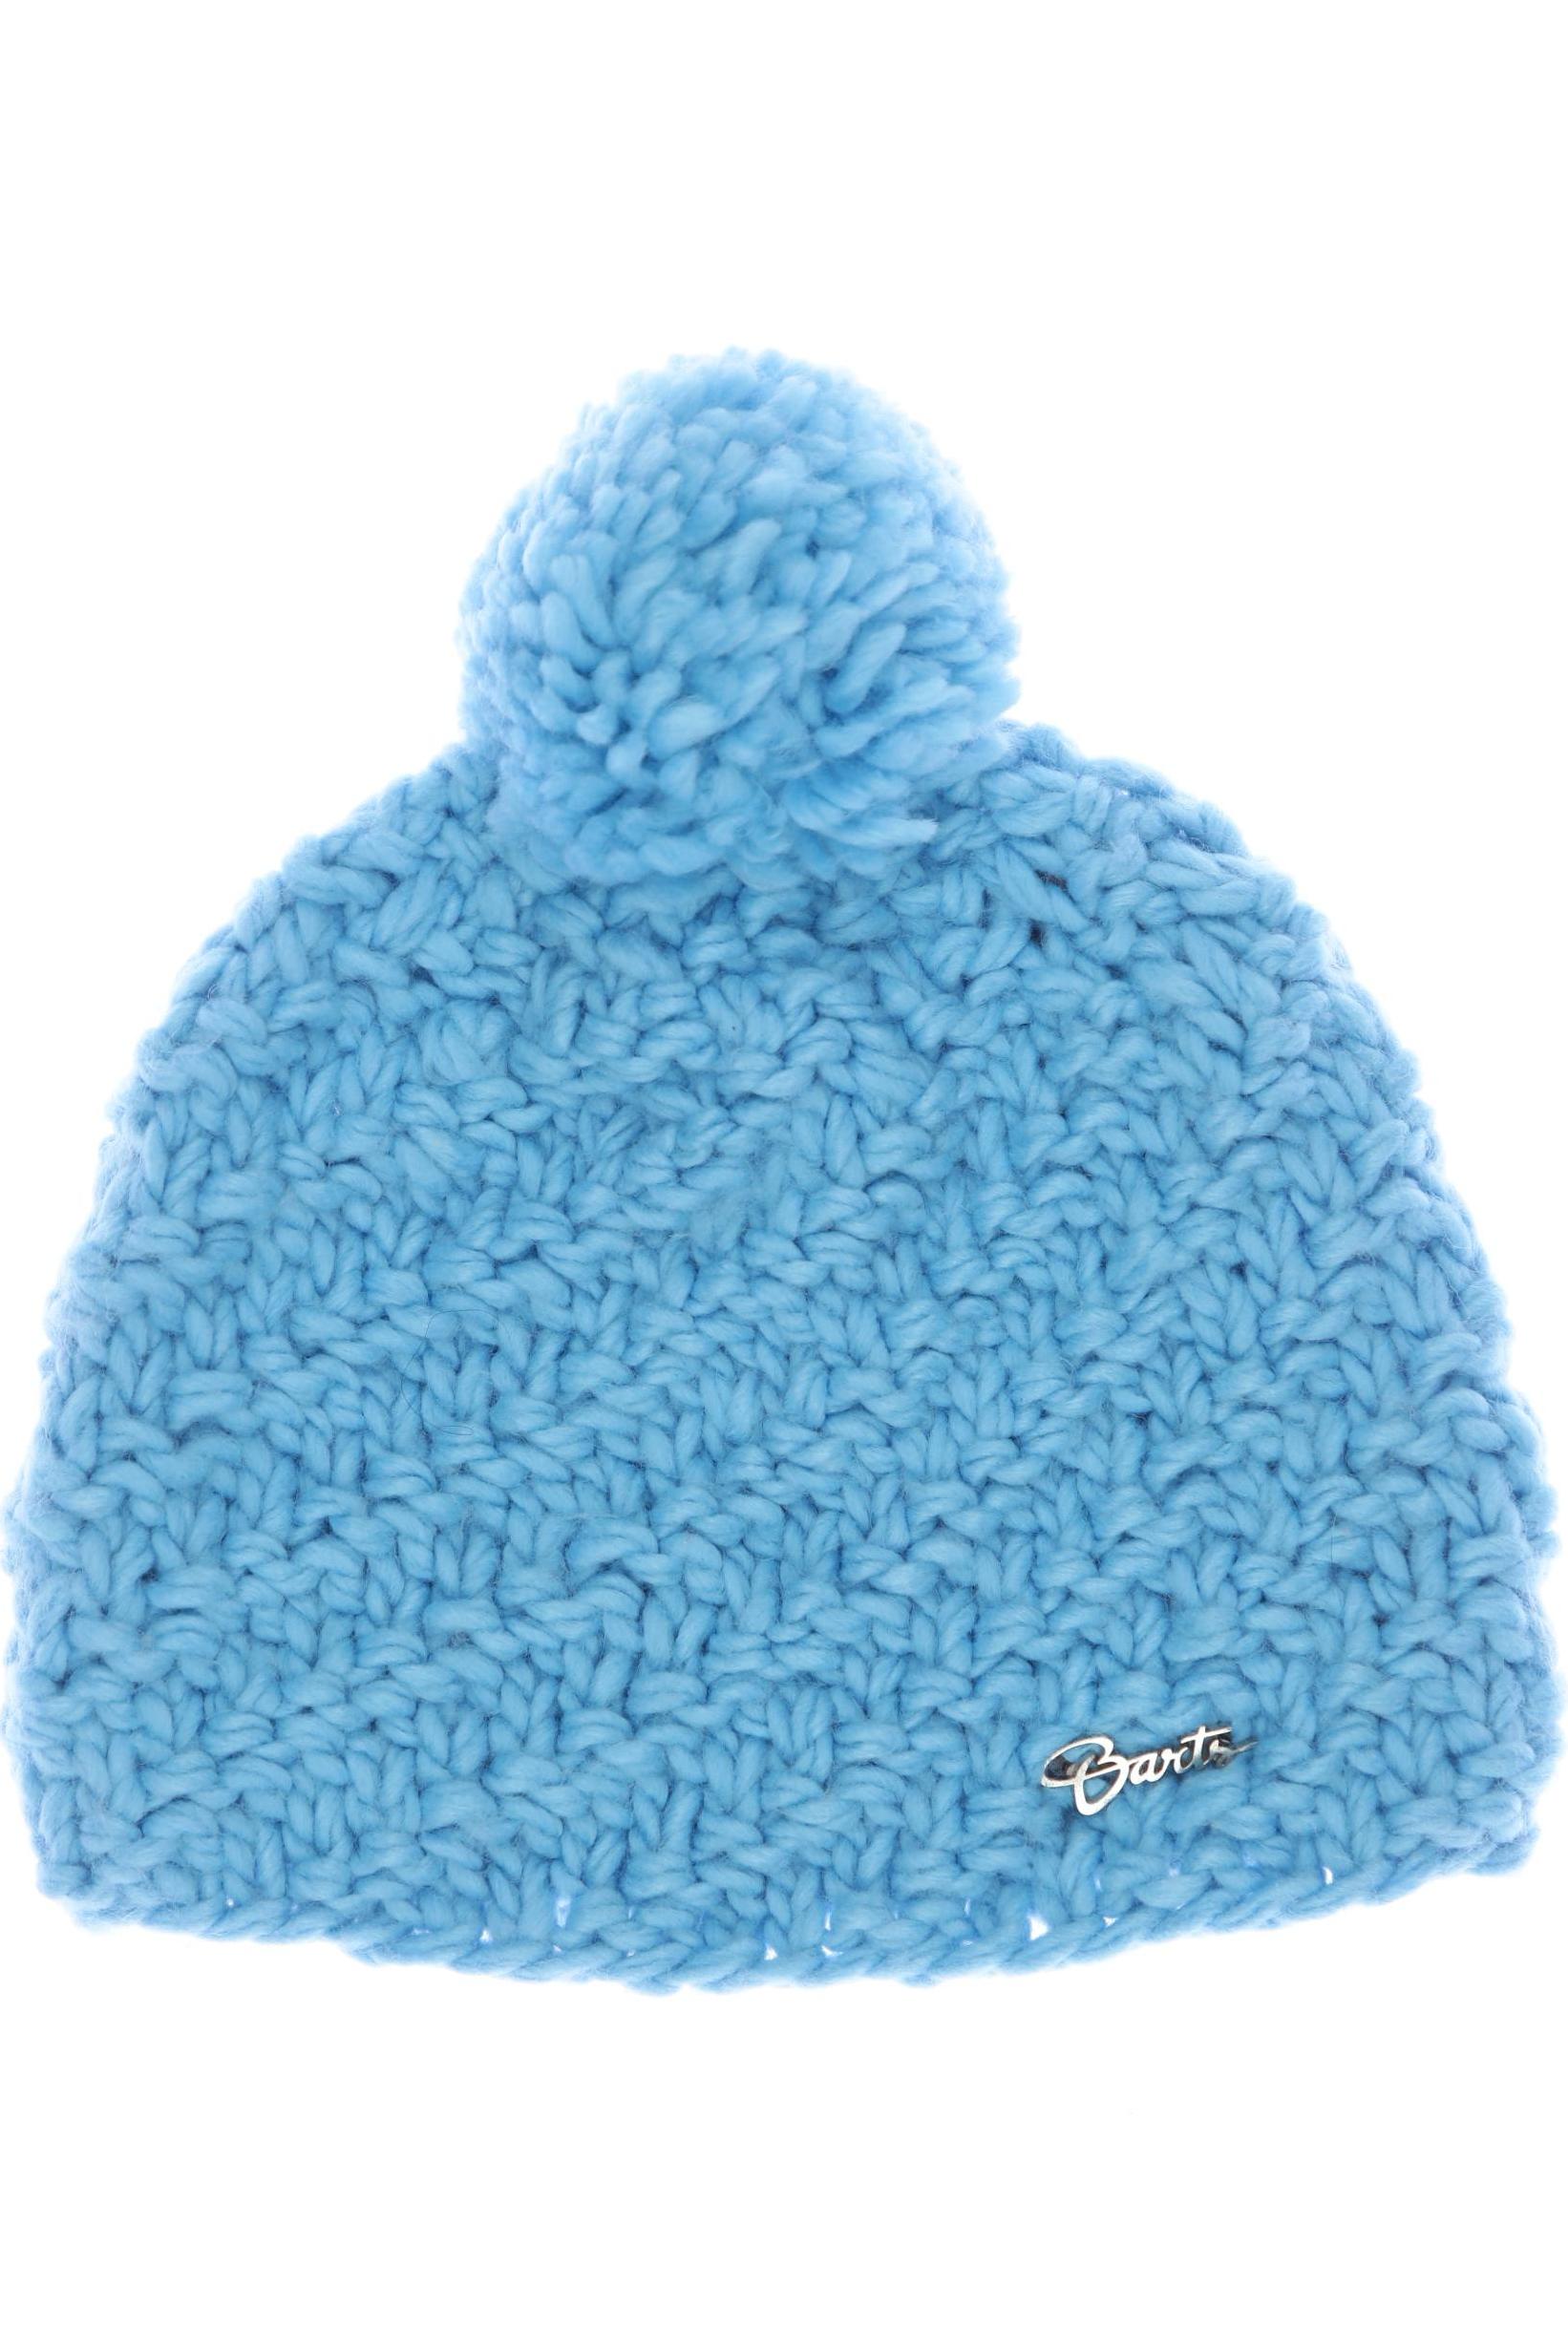 Barts Damen Hut/Mütze, blau von Barts